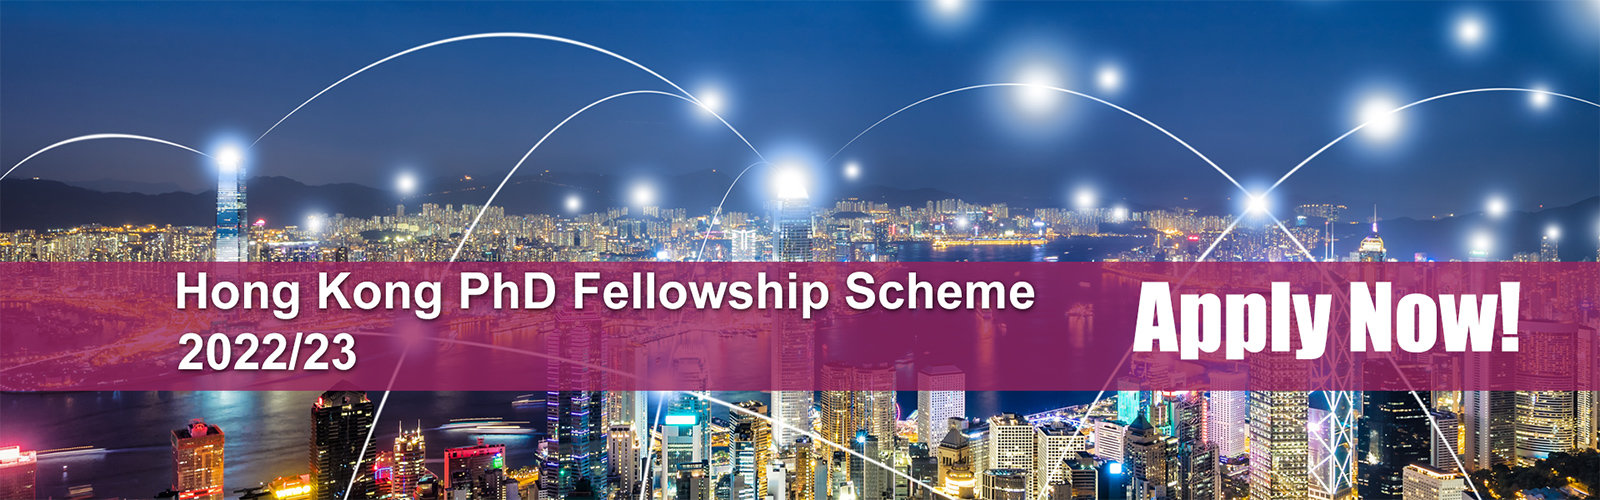 Hong Kong PhD Fellowship Scheme 2022/23